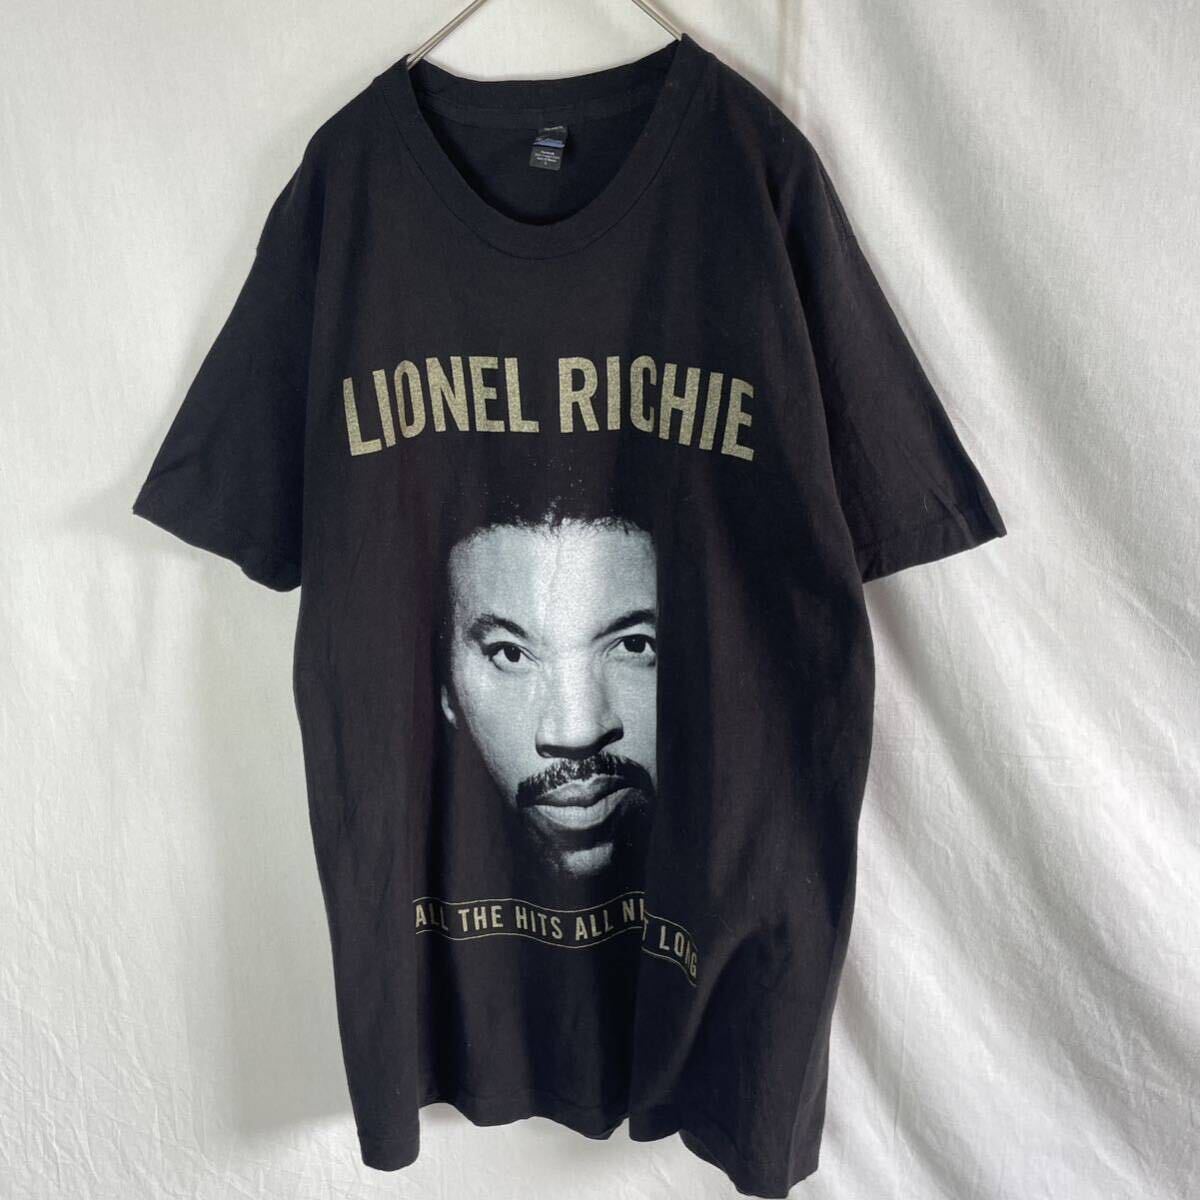 ライオネル・リッチー 半袖プリントTシャツ 古着 Lサイズ ブラックの画像1